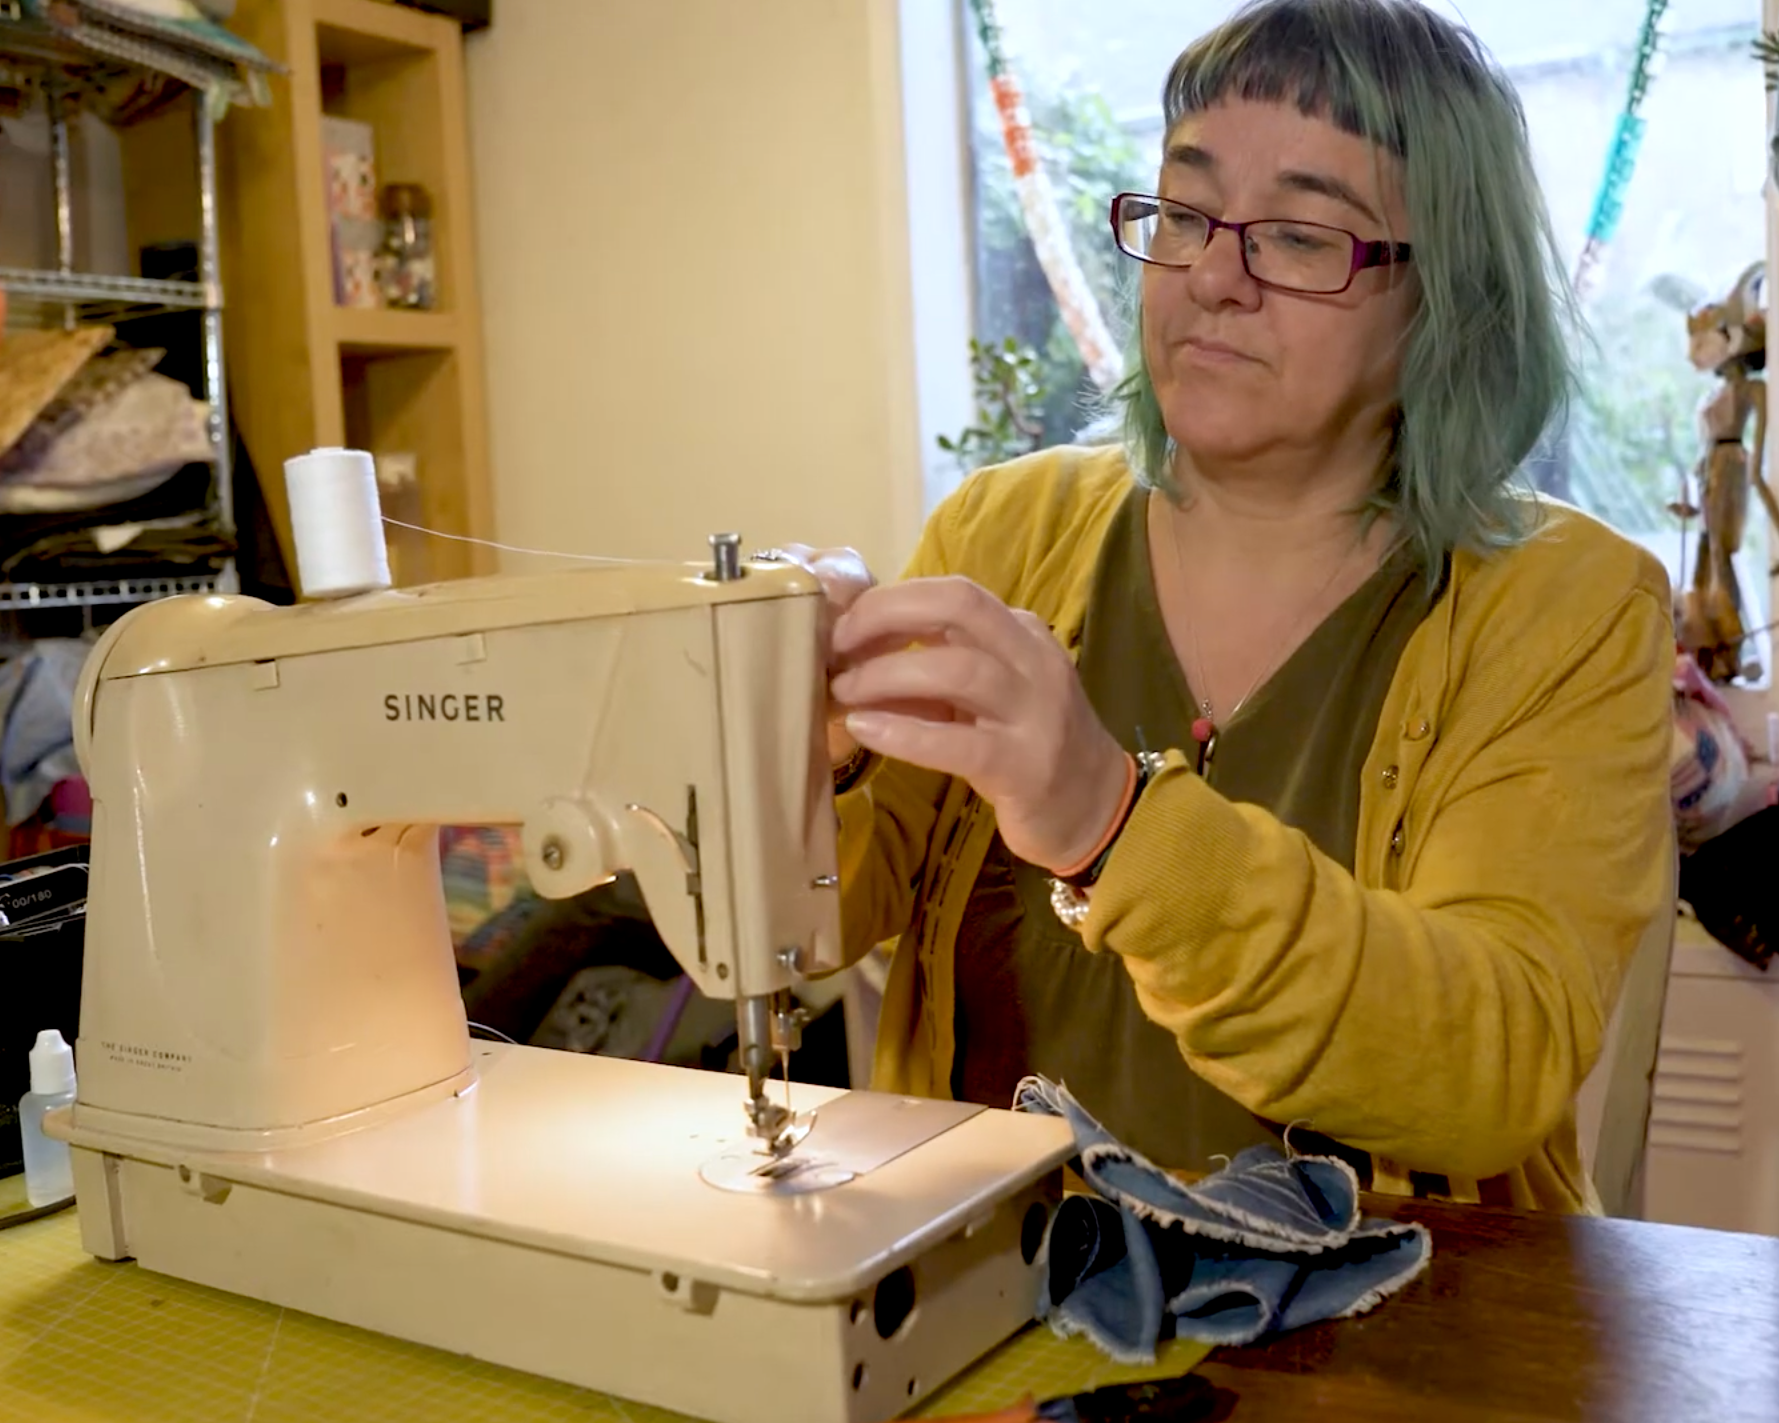 Jenni working on a sewing machine